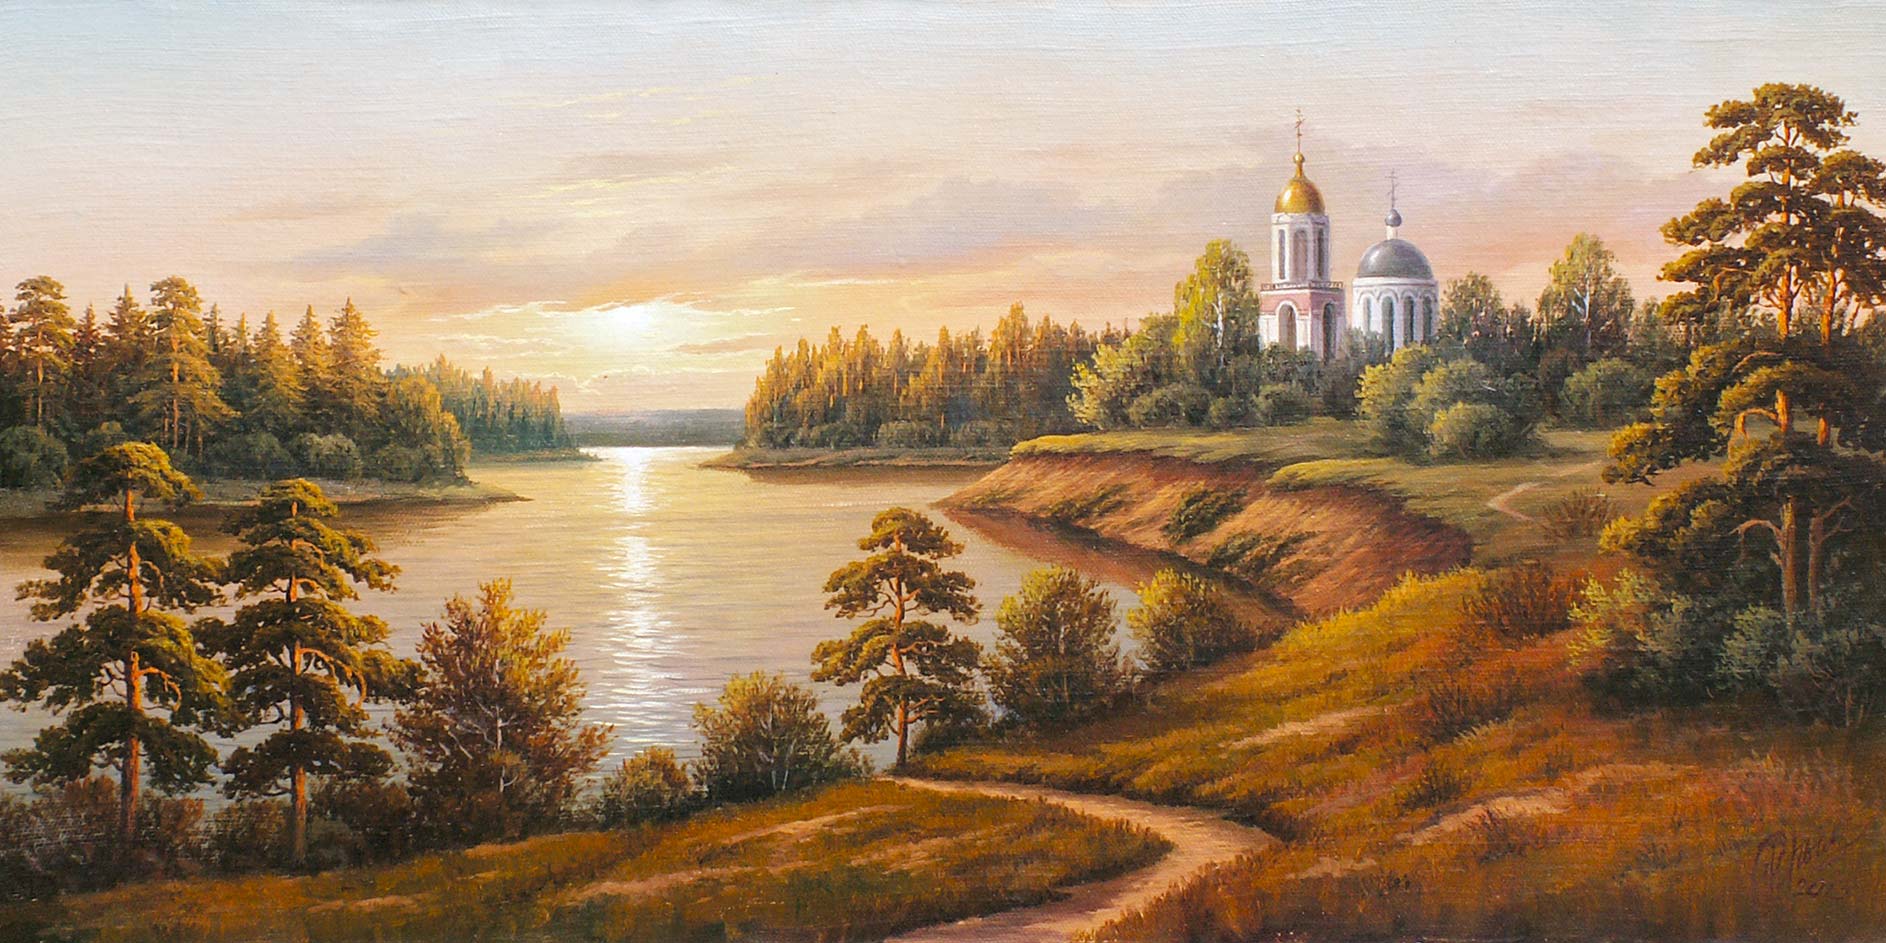 Храм на реке. Пейзаж — картина маслом на холсте